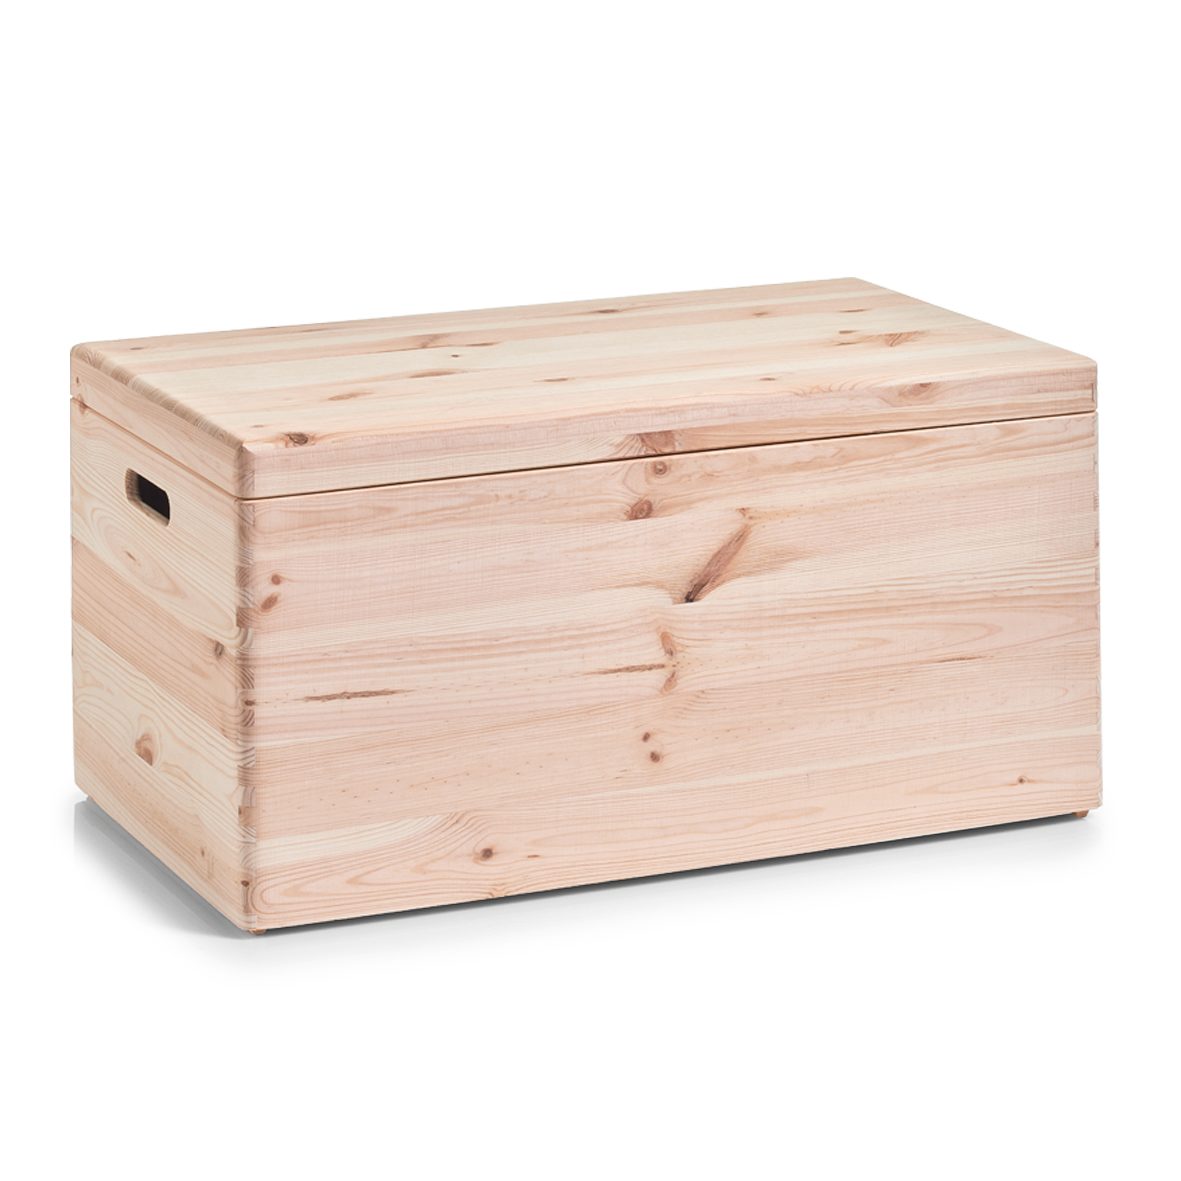 Aufbewahrungsbox Zeller present aus Holz in Holzfarben Allzweckkiste mit Deckel unbehandeltes Kiefernholz - ca. 60 x 40 cm